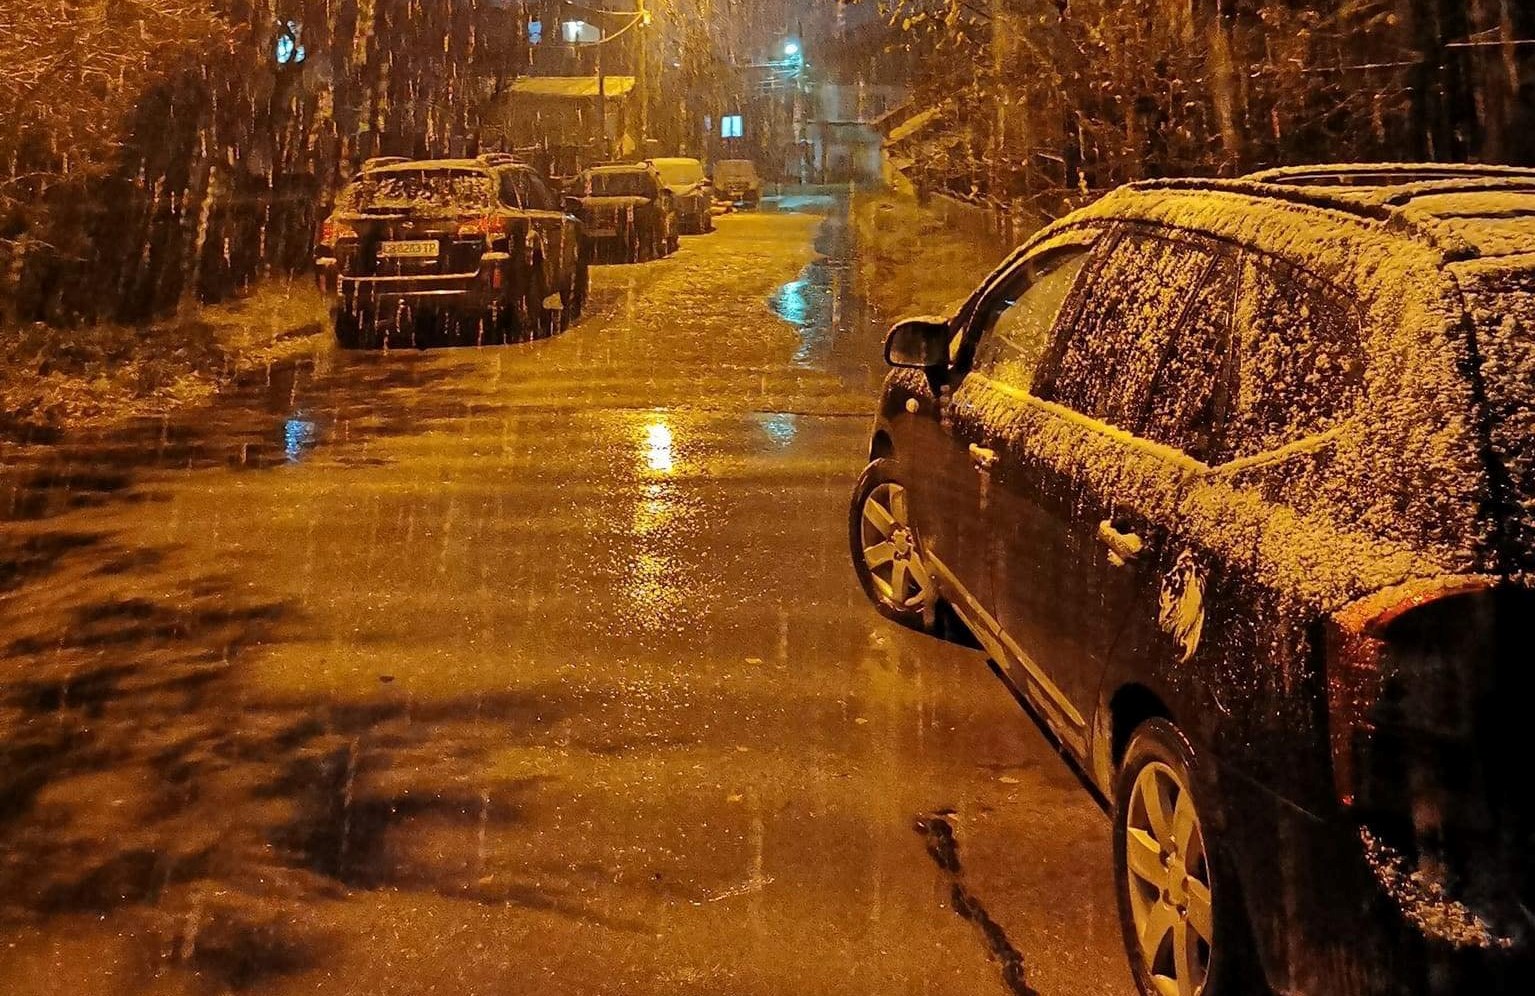 Времето се обръща.Снегът идва в София заваля първи сняг /СНИМКИ/